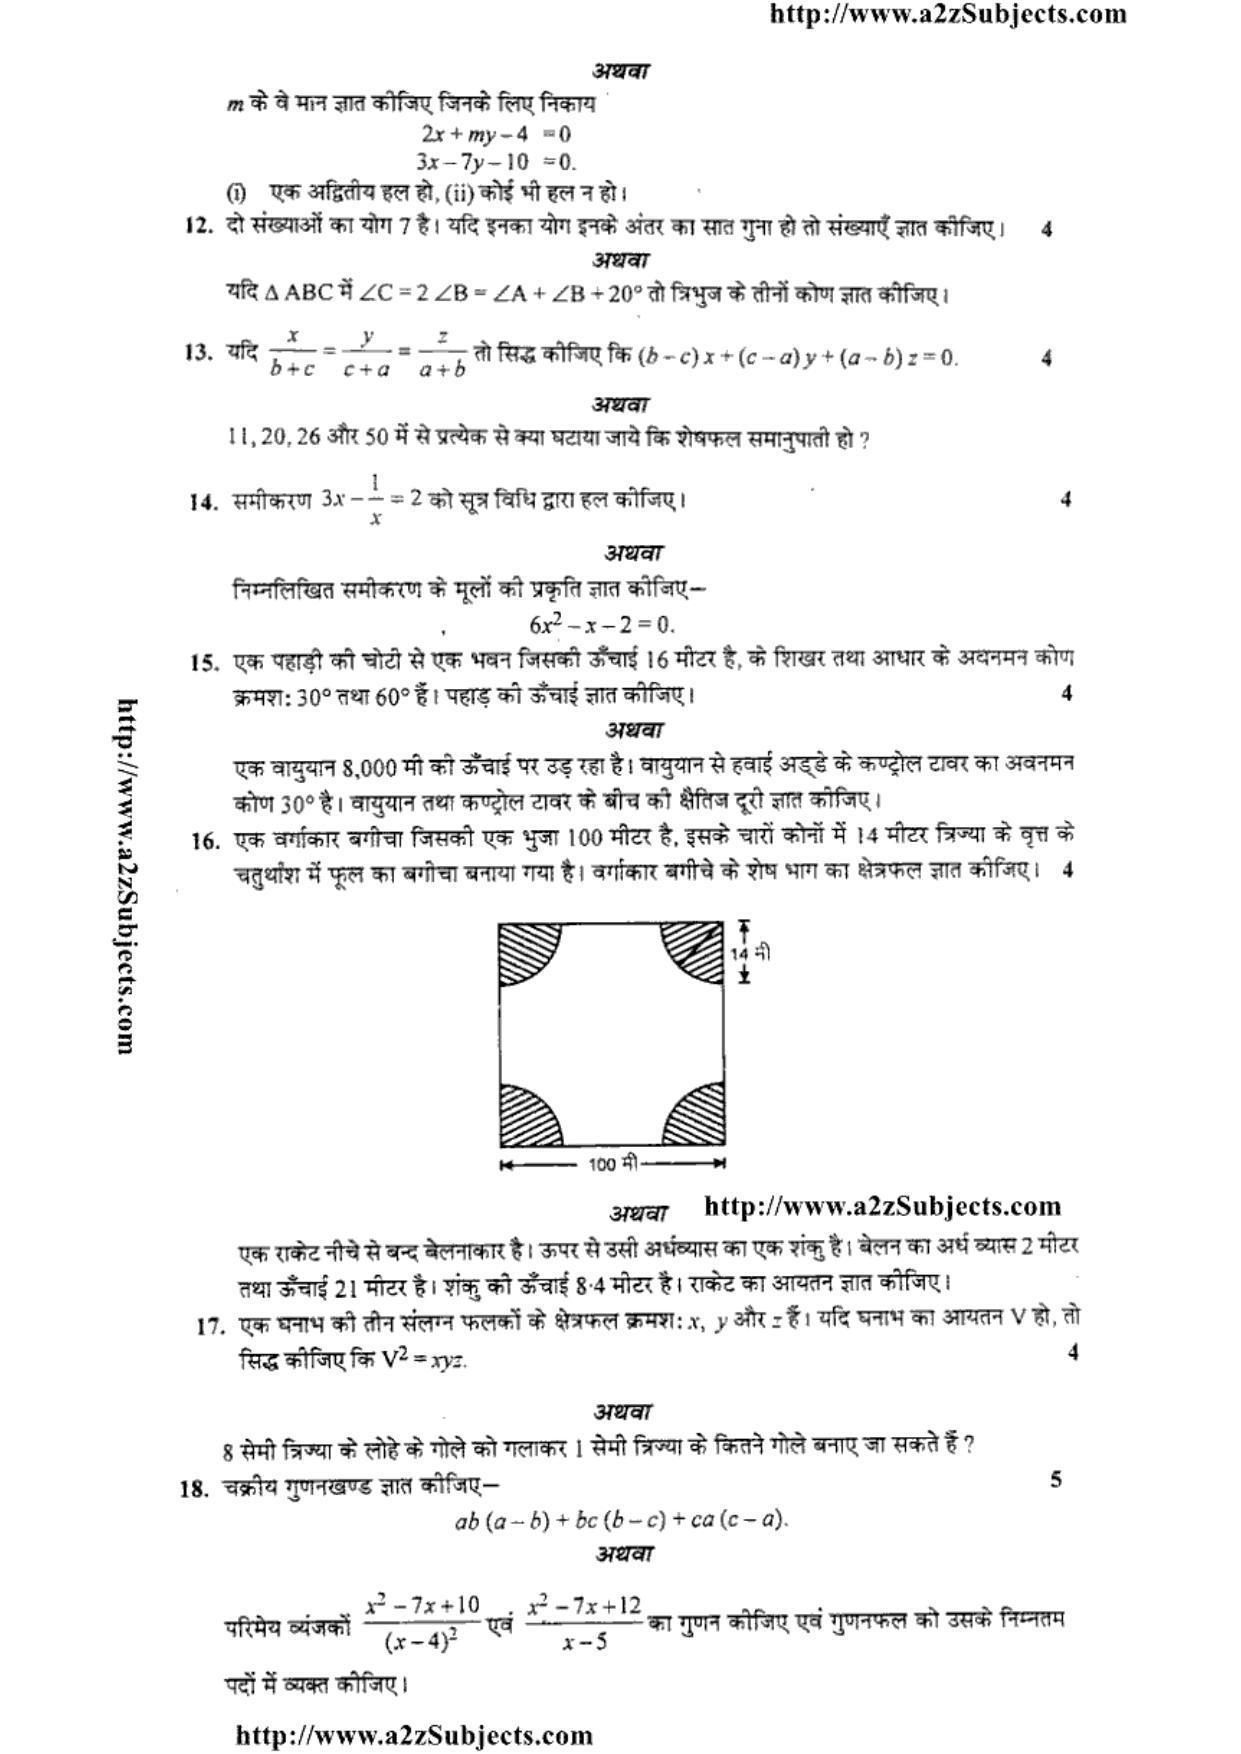 MP Board Class 10 Mathematica ( Hindi Medium) 2016 Question Paper - Page 3